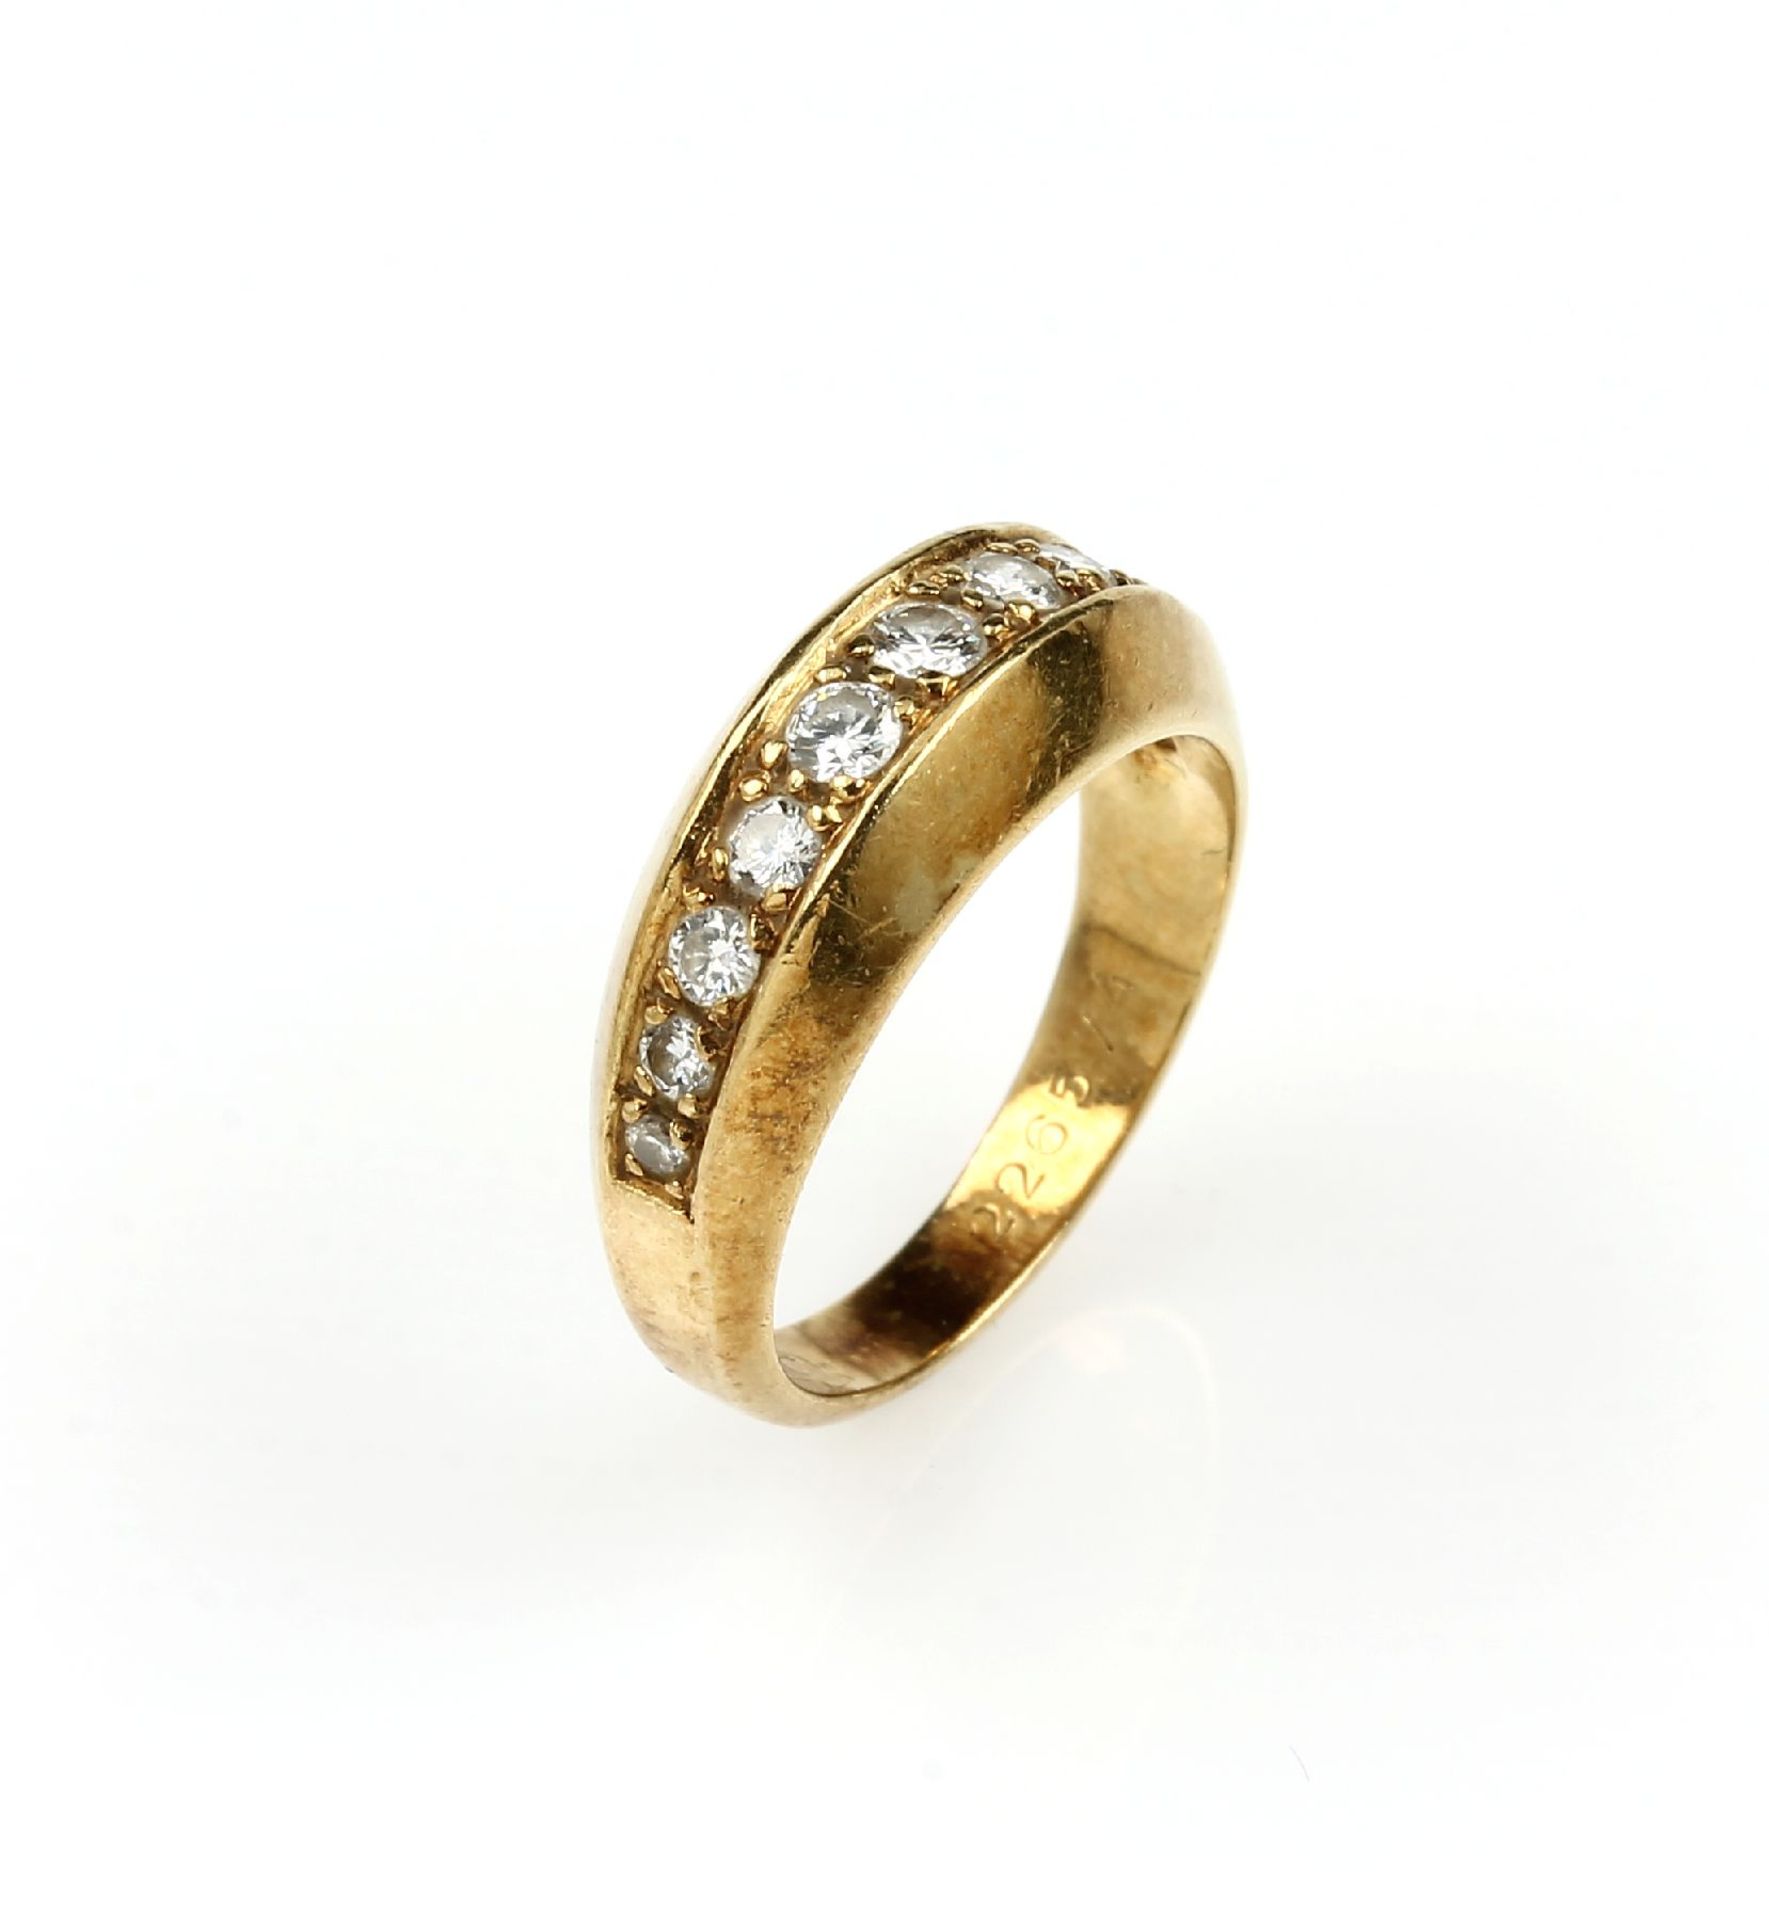 18 kt Gold Ring mit Brillanten, GG 750/000,mittig 11 Brillanten zus. ca. 0.2 ct Weiß/si, im